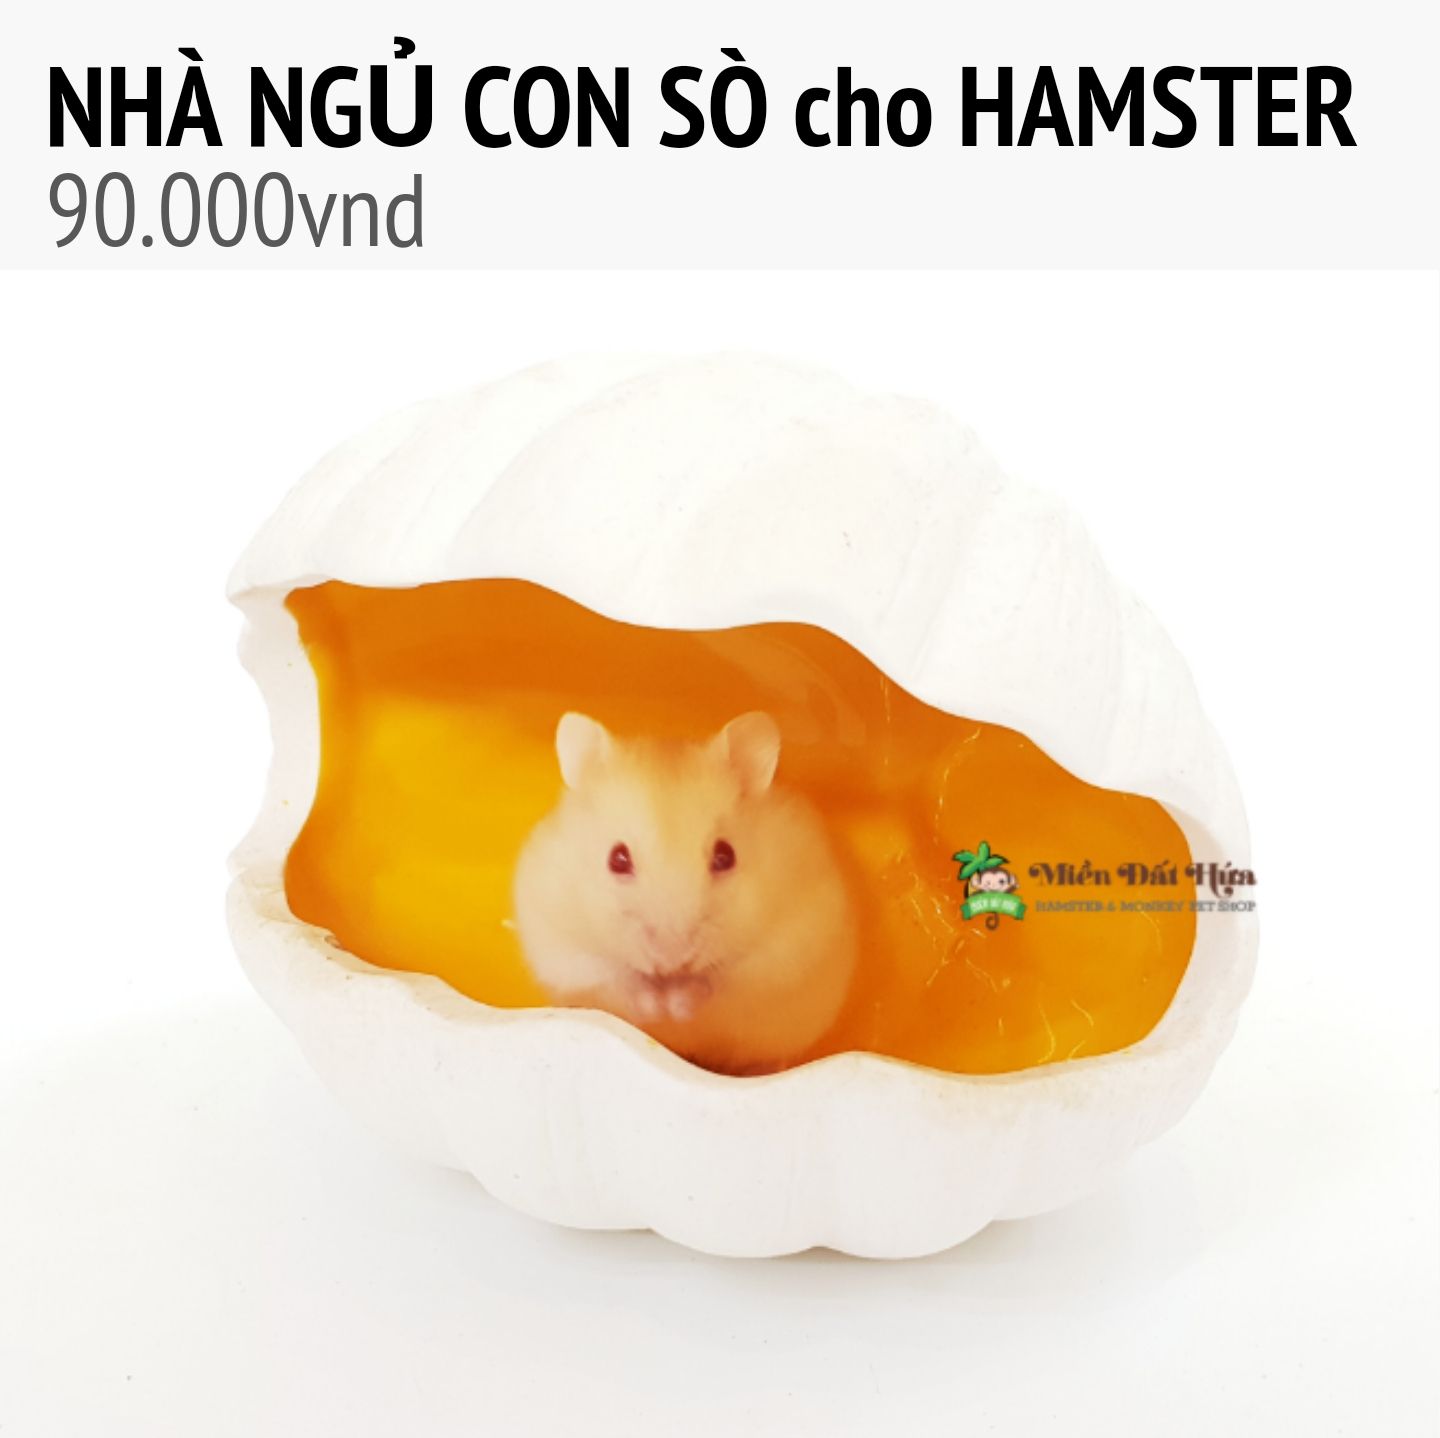 NHÀ NGỦ SỨ con sò cho hamster